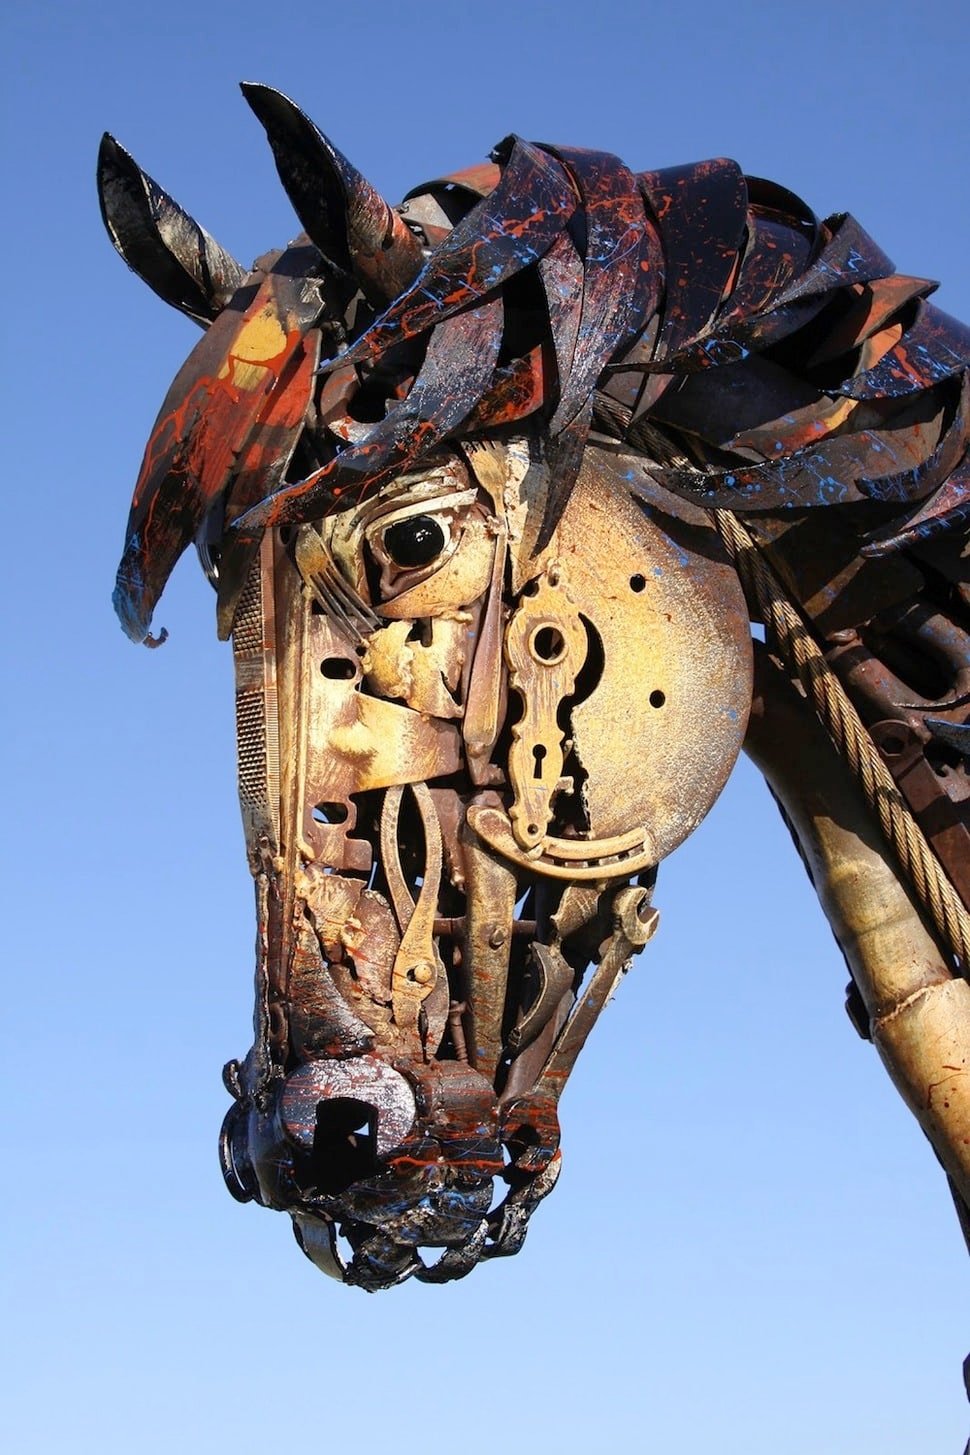 tilestwra.com | Καλλιτέχνης δημιουργεί αγάλματα ζώων από άχρηστα μέταλλα